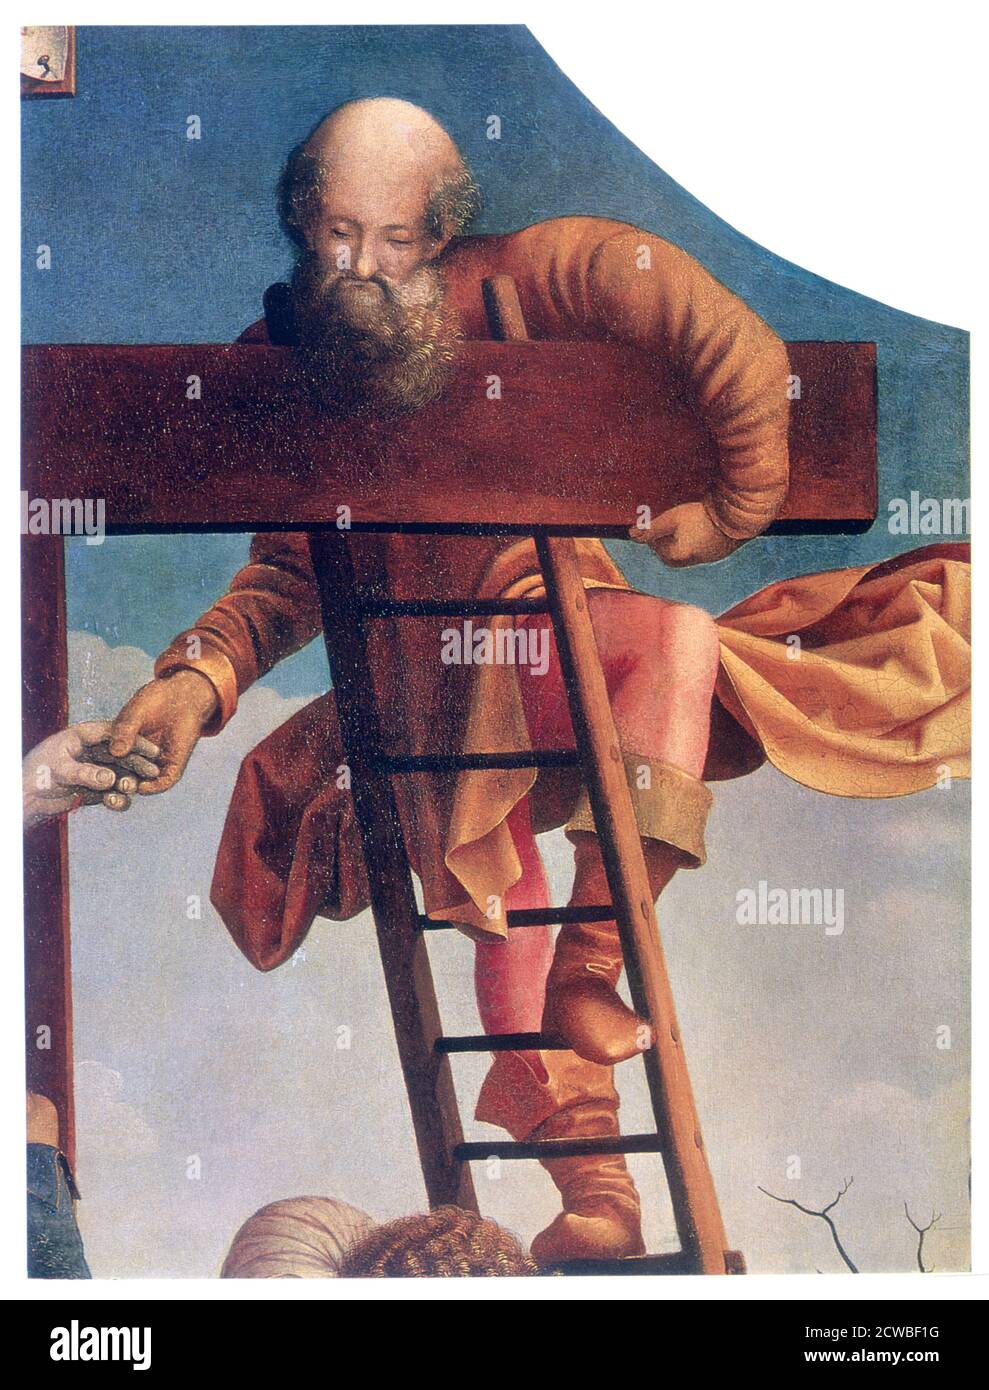 Der Abstieg vom Kreuz' (Detail), c1520. Künstler: Jan Gossaert. Gossaert (c1478-1532) gilt in der Regel als Begründer der romanistischen Kunstbewegung, der ersten Gruppe flämischer Maler, die von der italienischen Renaissance beeinflusst wurde. Vom State Hermitage Museum, St. Petersburg. Stockfoto